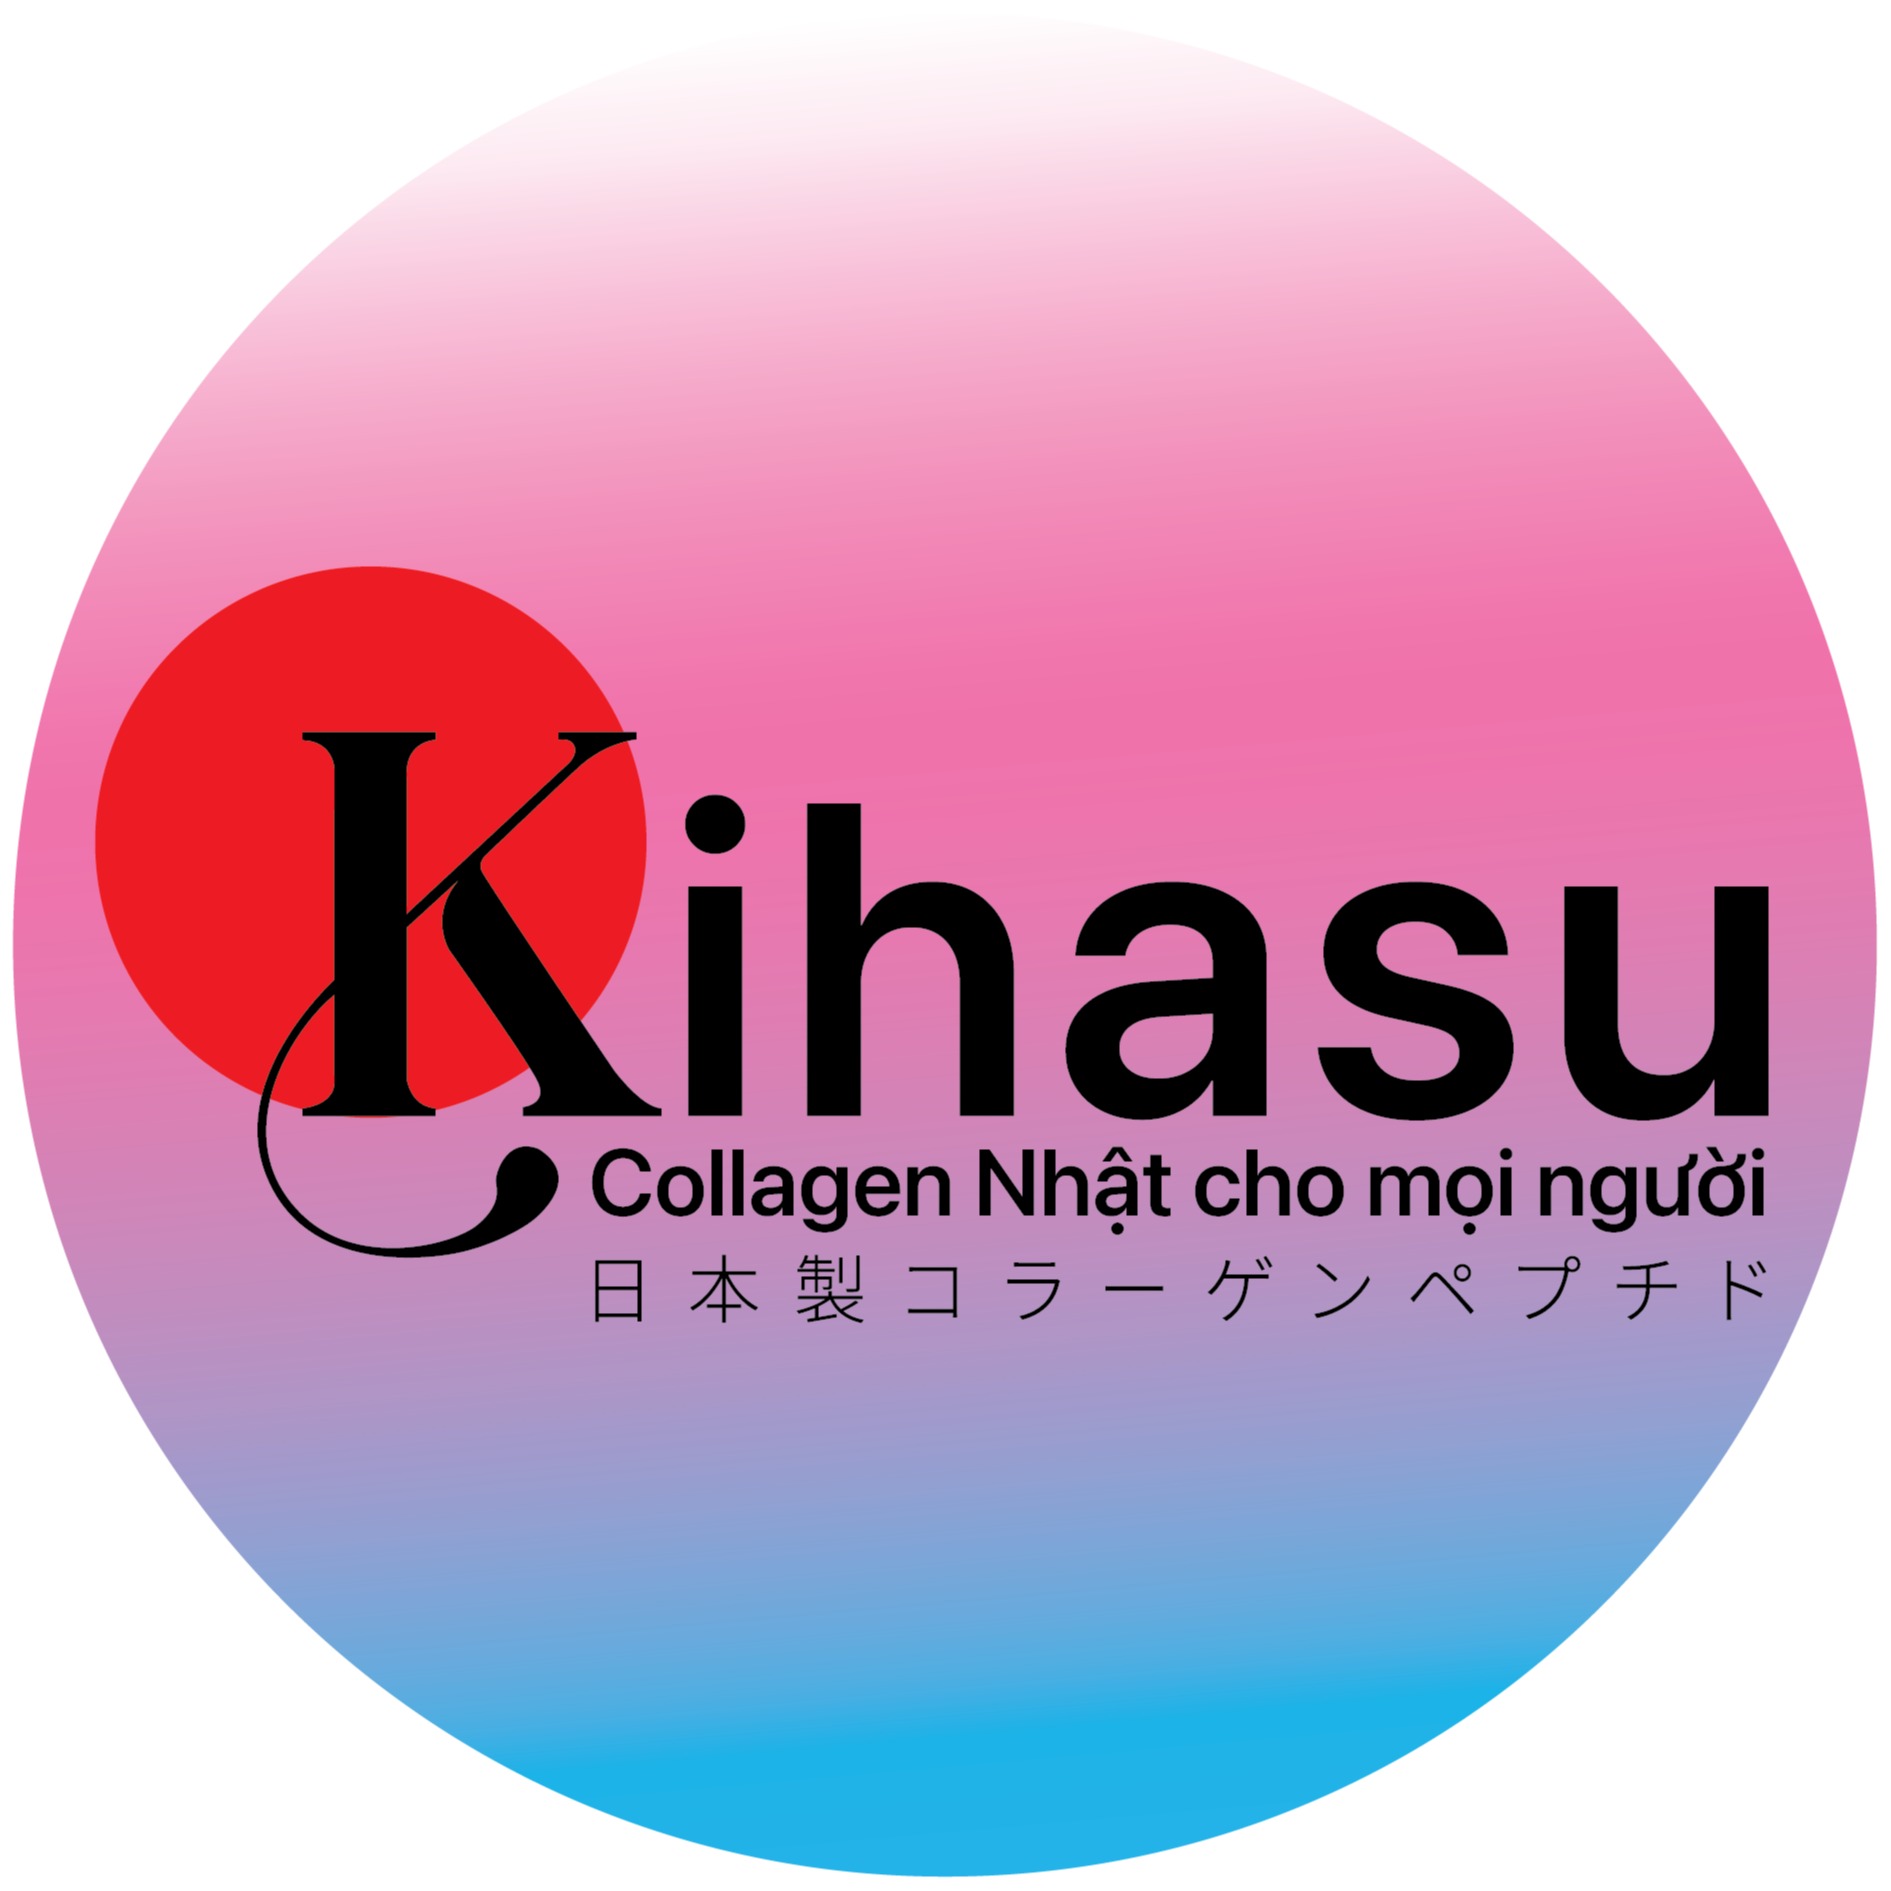 Kihasu Collagen